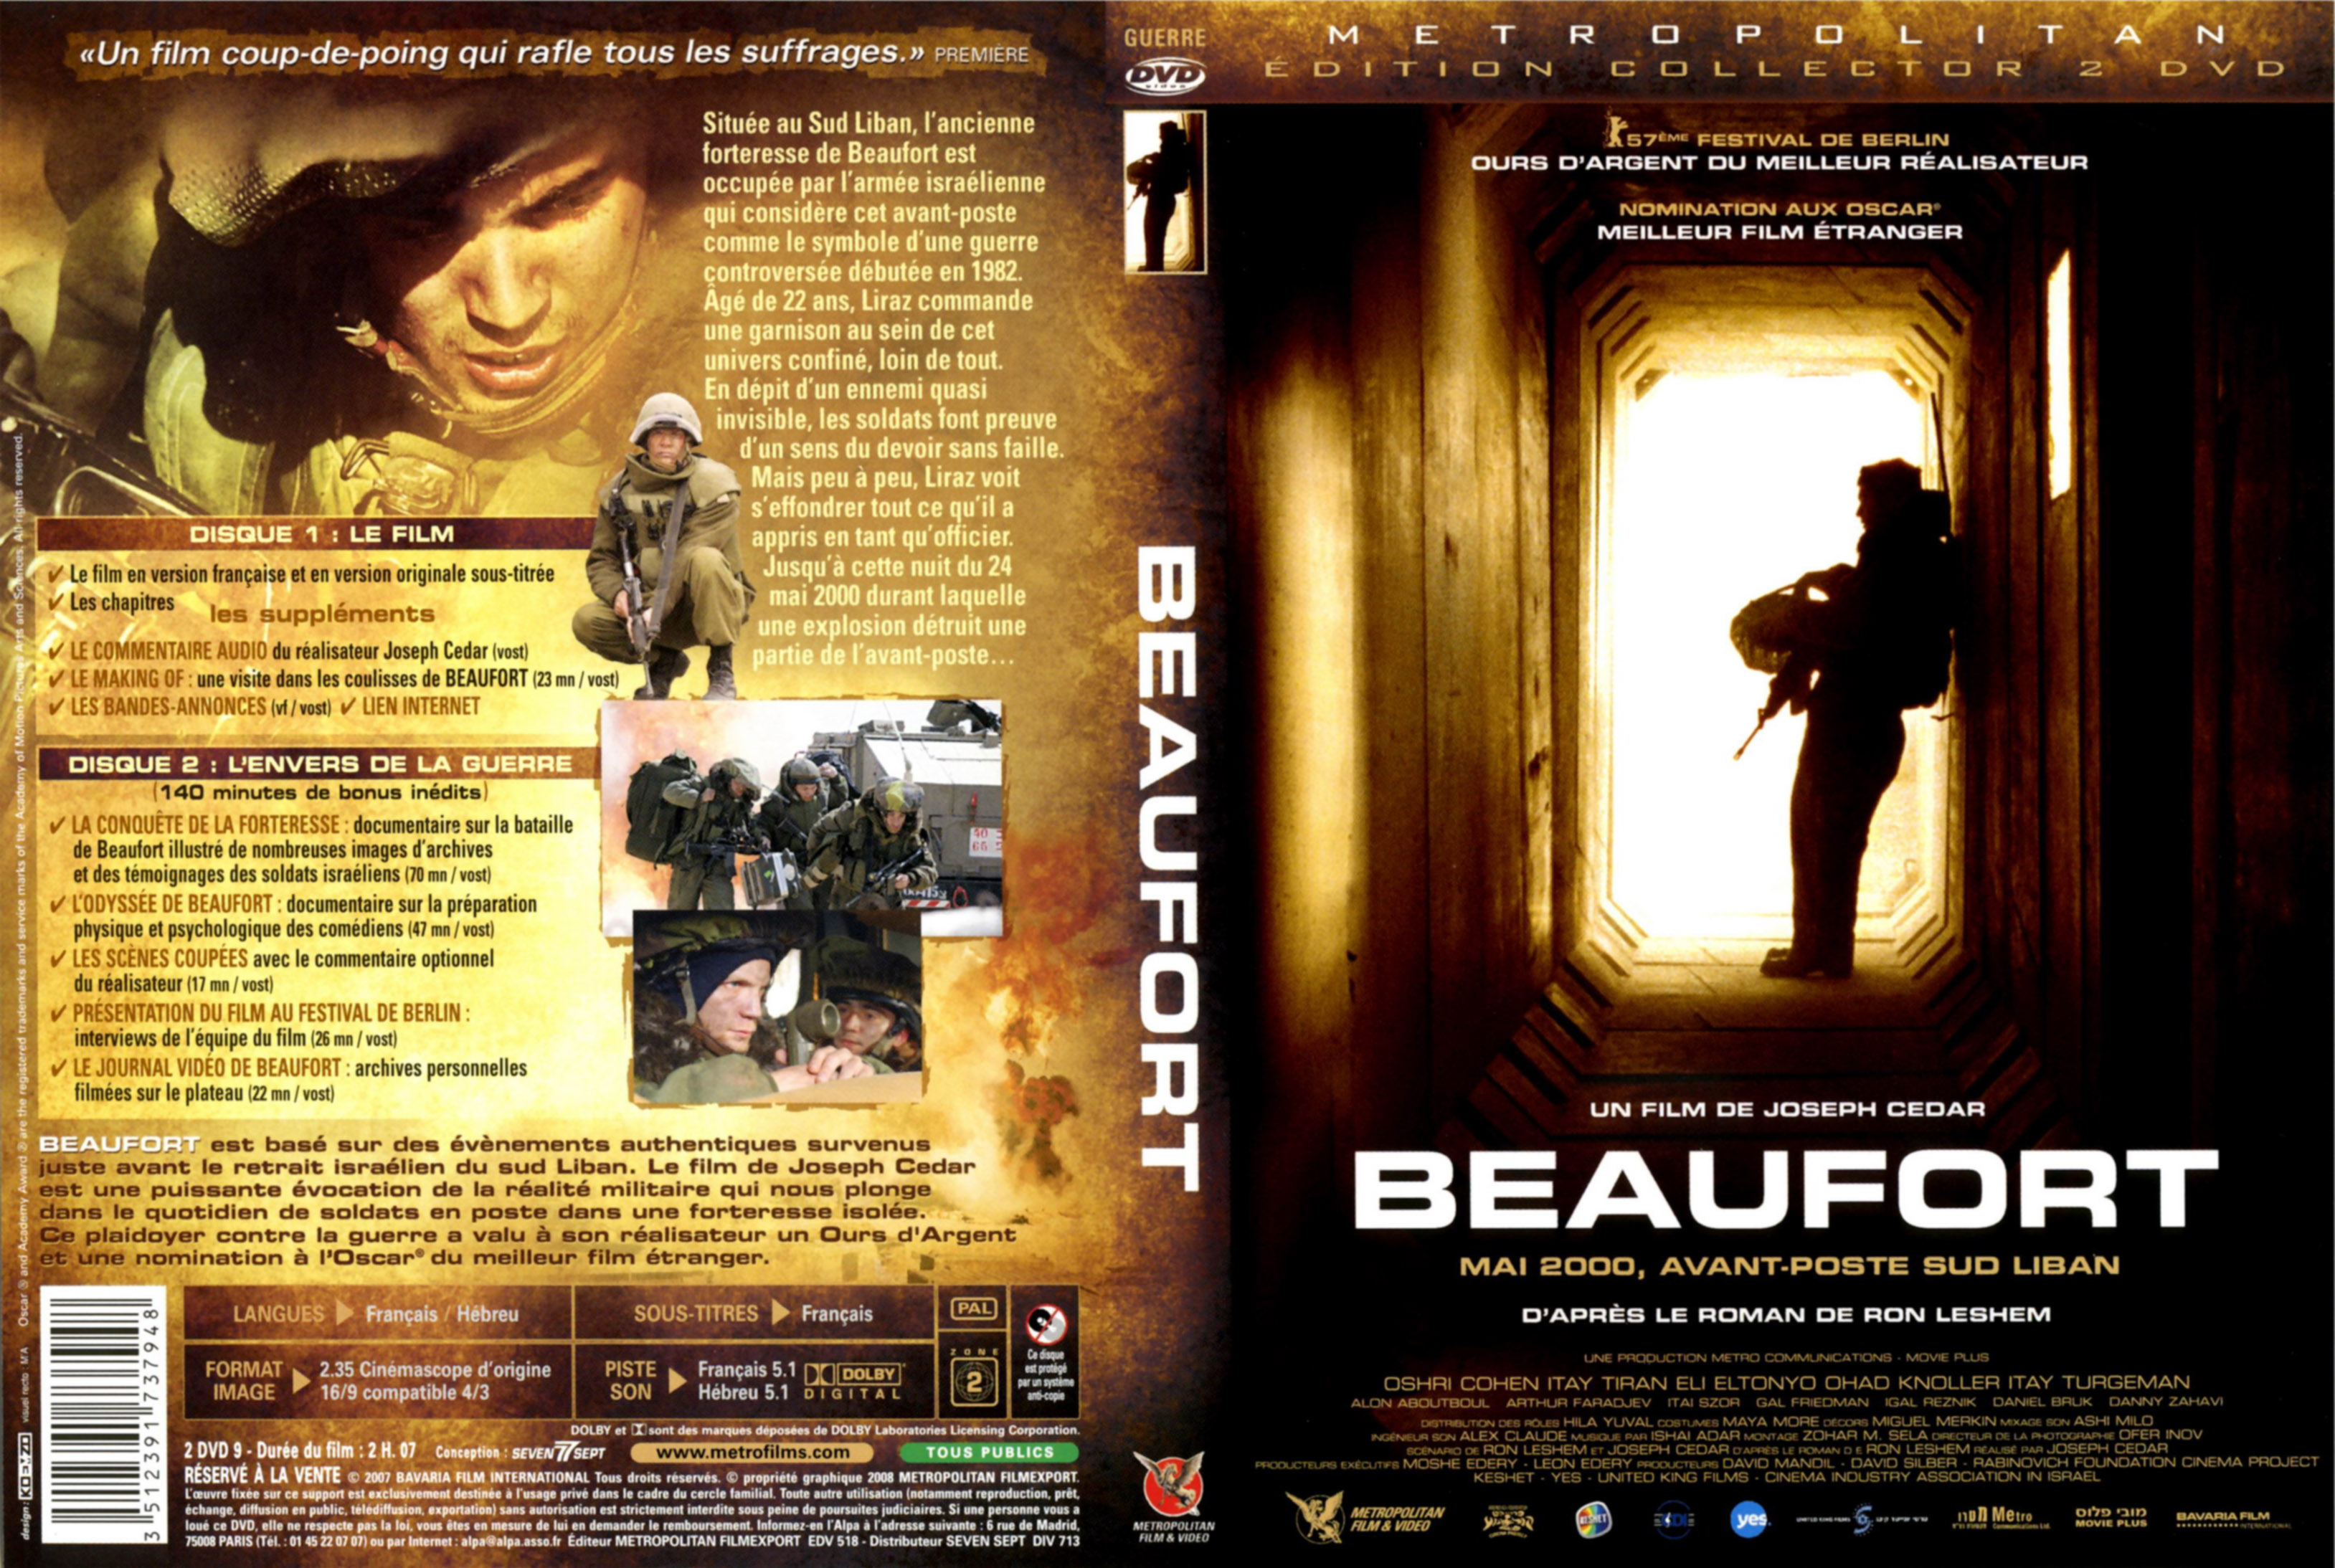 Jaquette DVD Beaufort v2